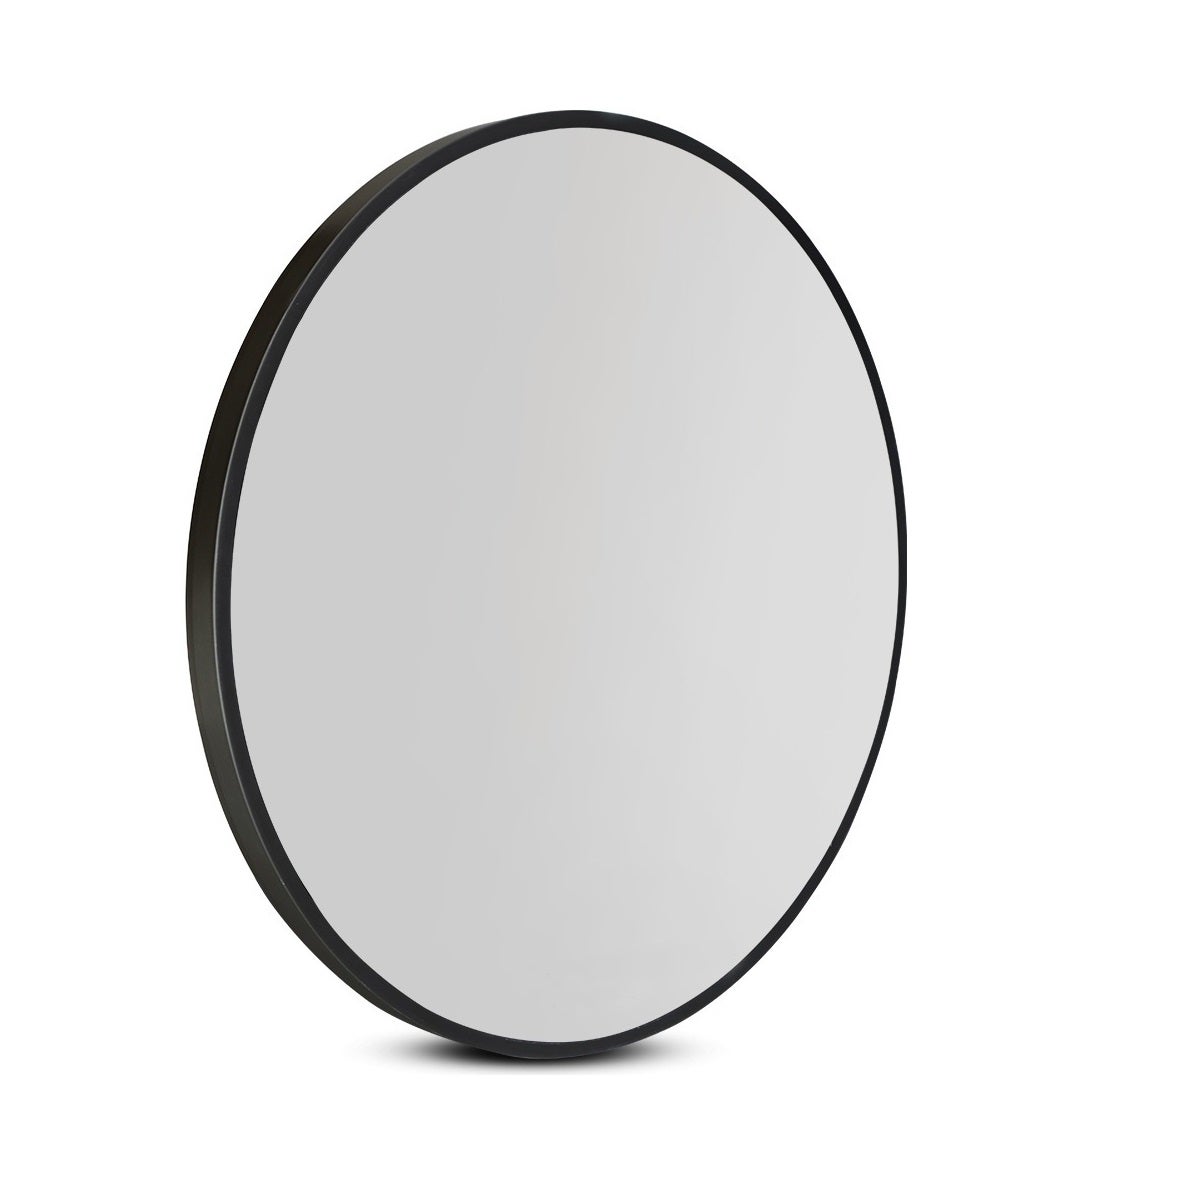 Classic Black Frame Round Mirror – 5 Sizes (50cm / 60cm / 70cm / 80cm / 90cm)